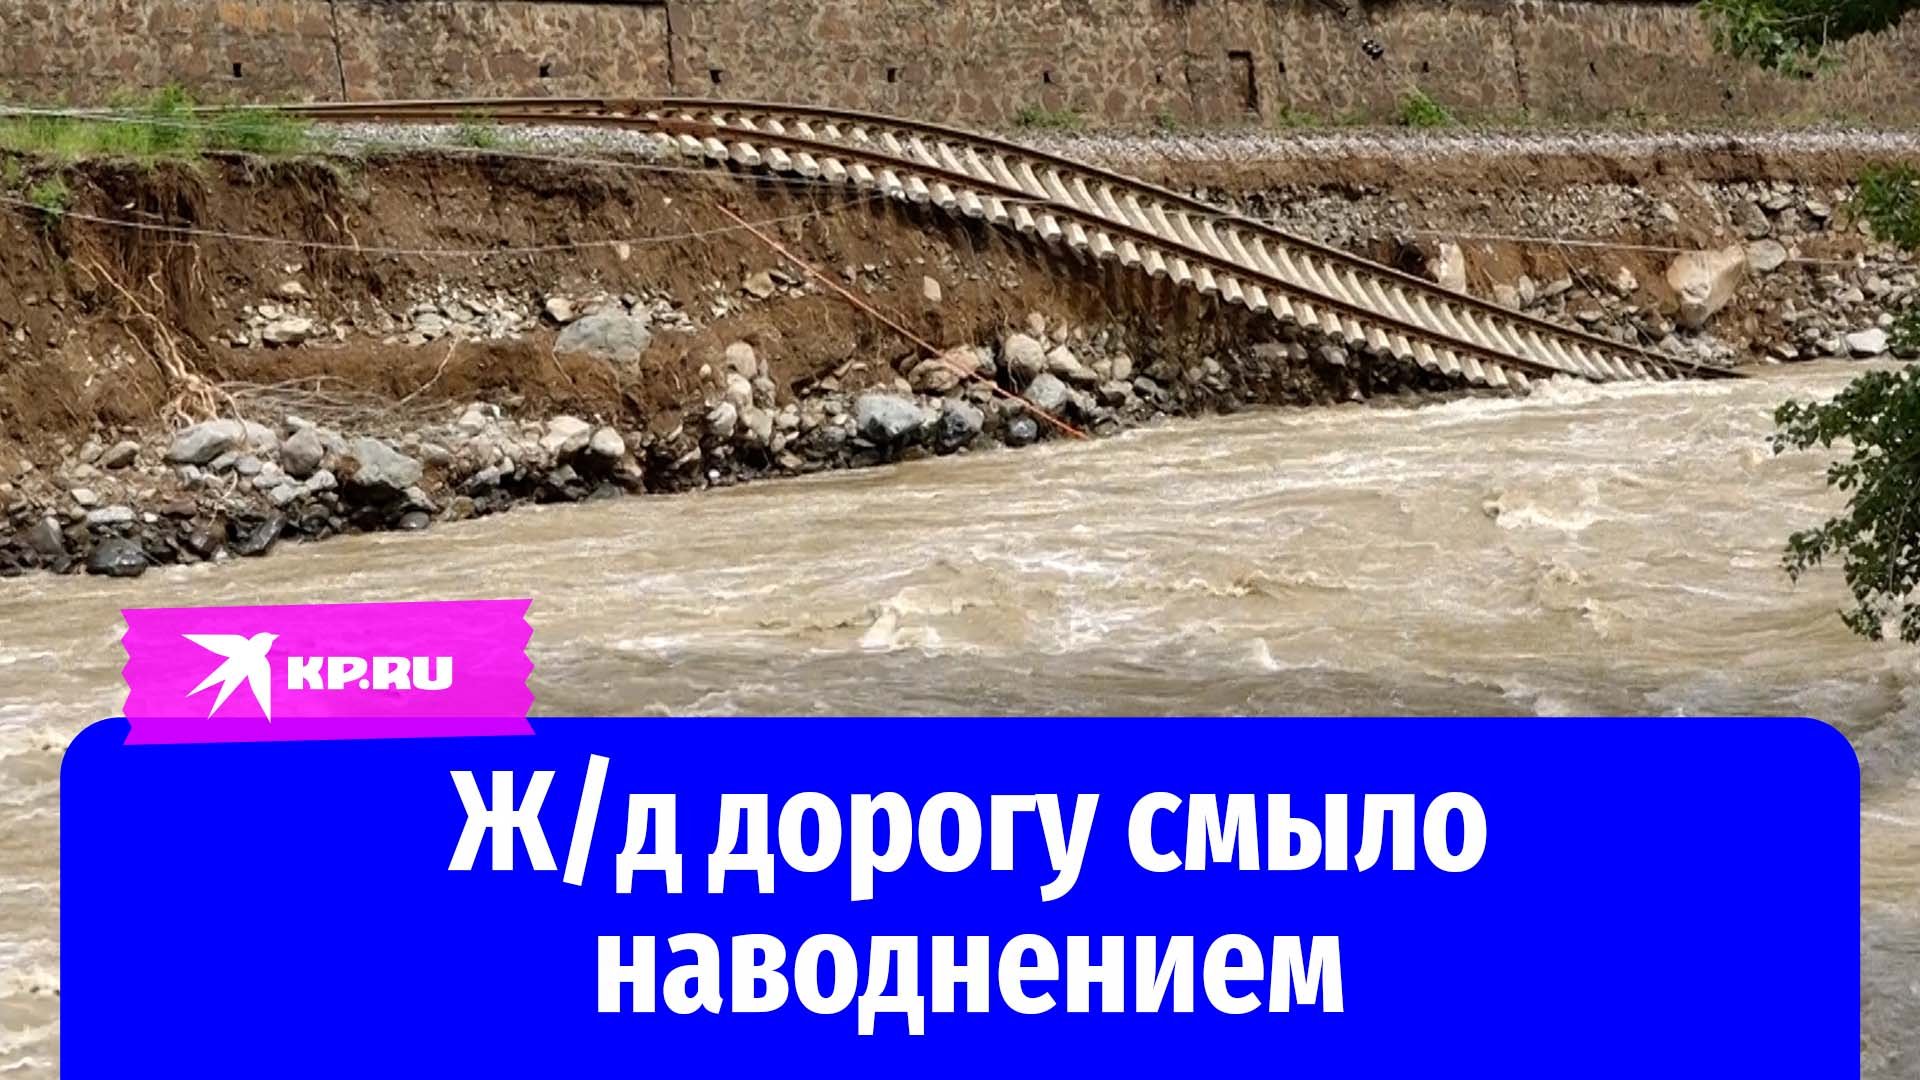 В Армении наводнение смыло железную дорогу